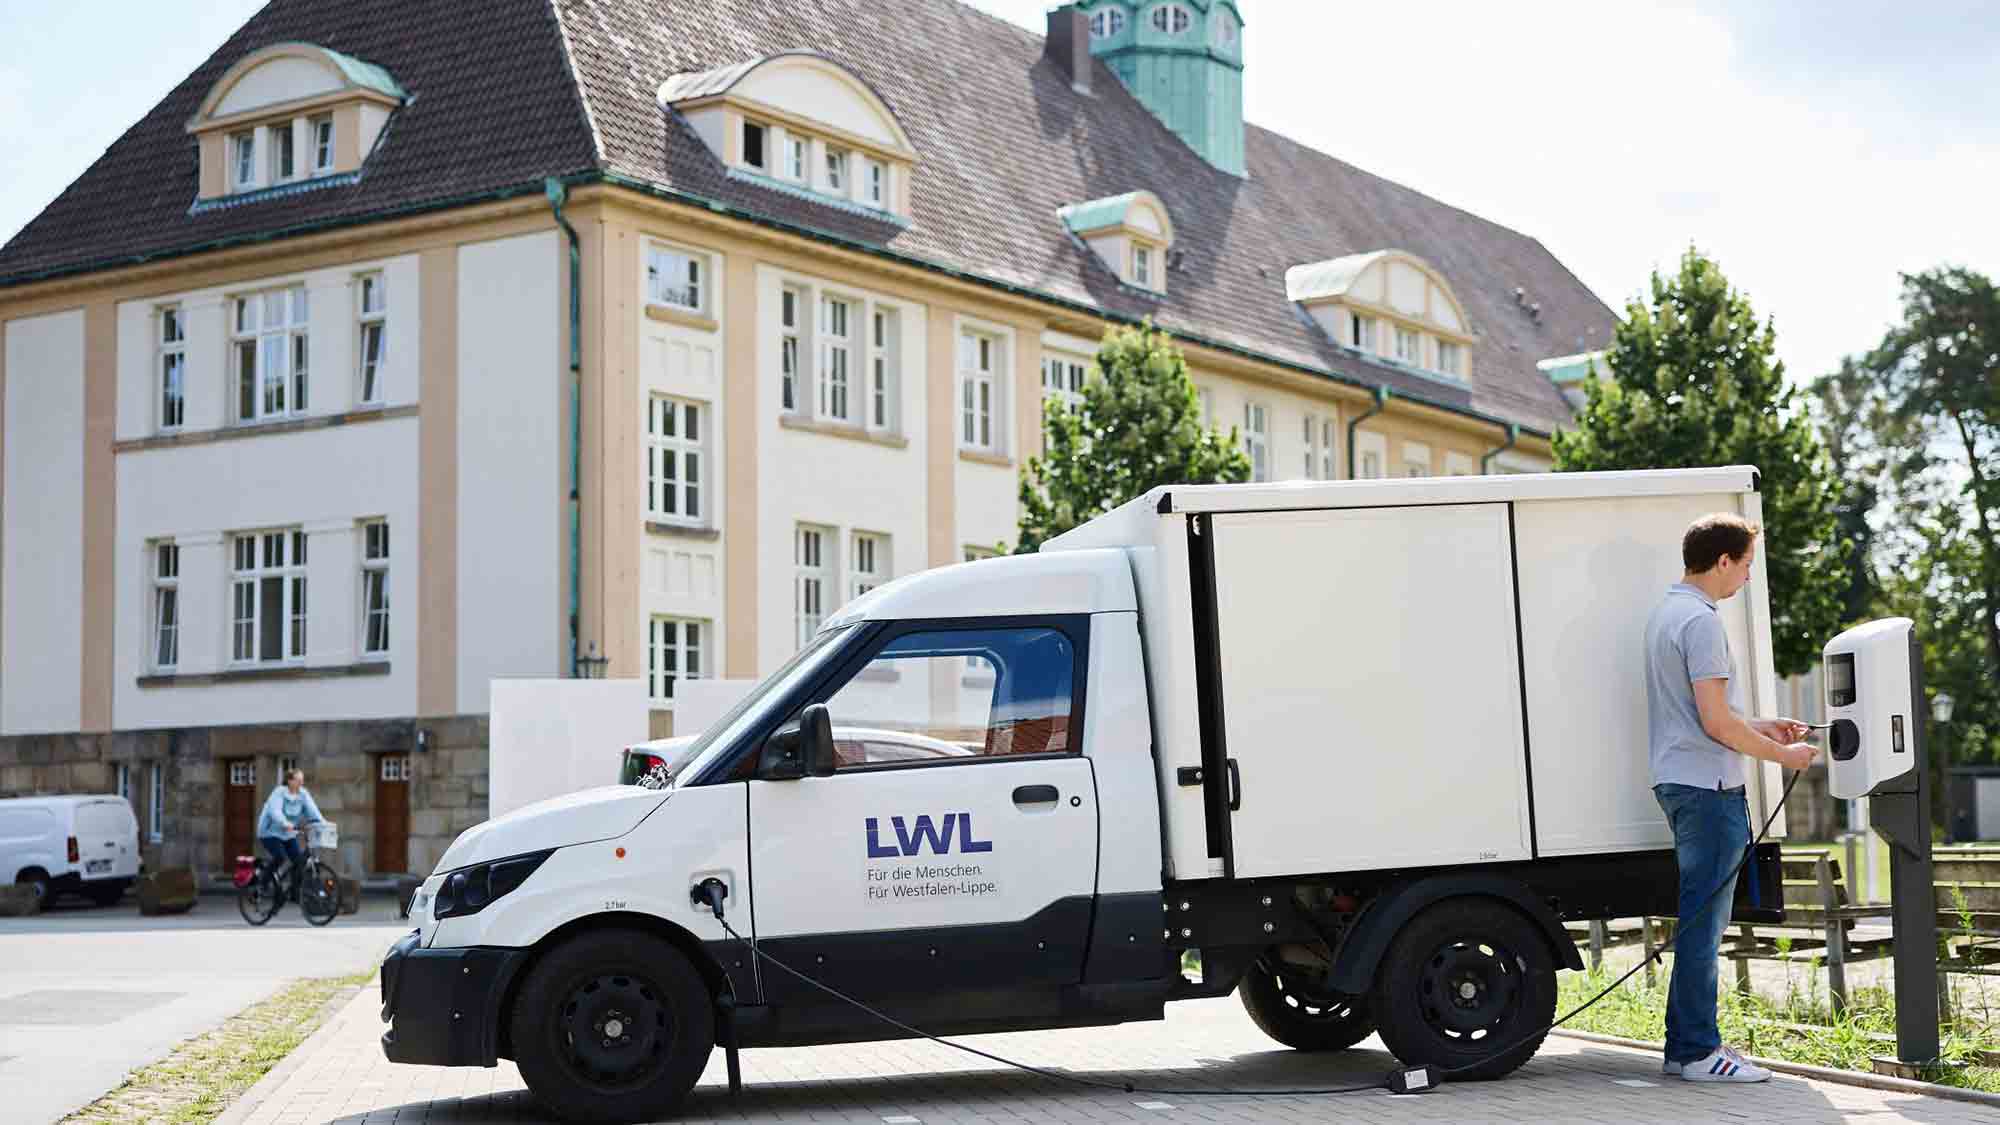 Sogenanntes LWL Klinikum Gütersloh stellt öffentliche Elektrolademöglichkeiten bereit